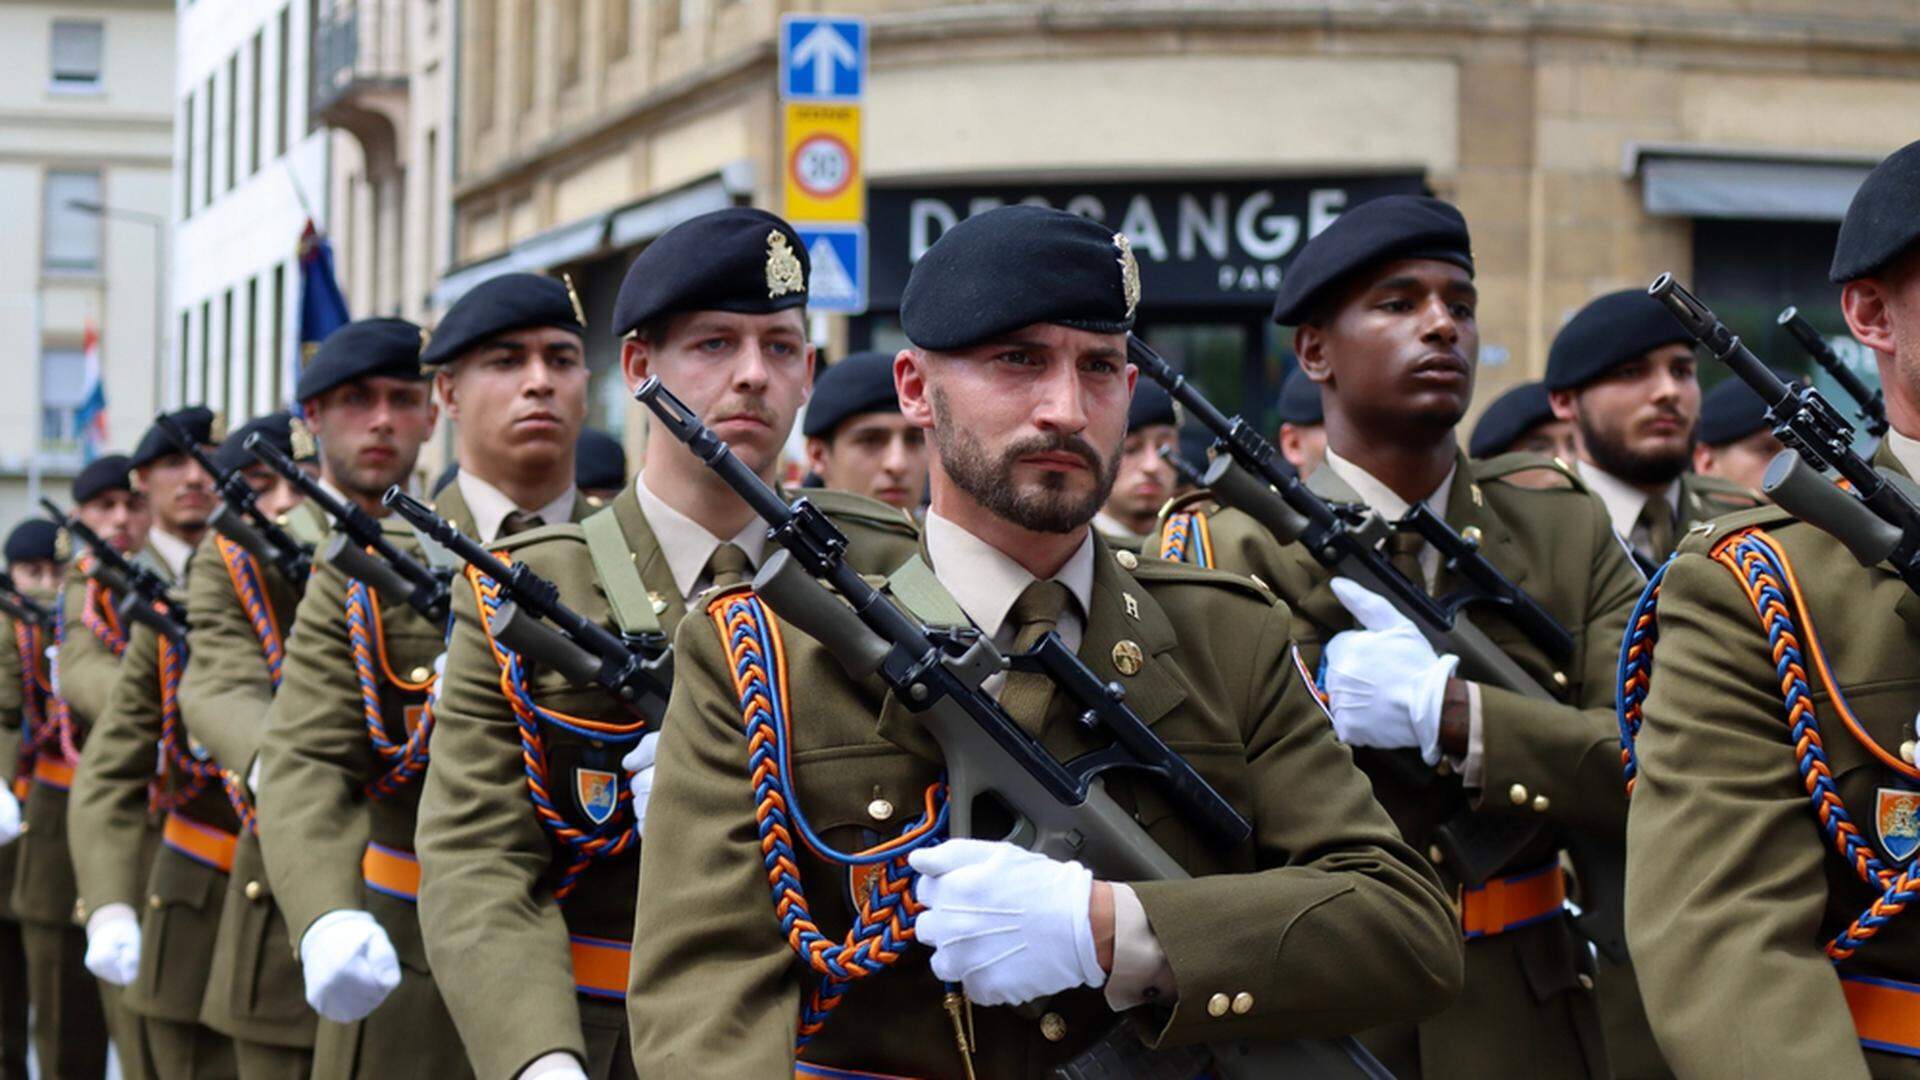 Vojáci lucemburské armády pochodují se svou bývalou primární útočnou puškou Steyr AUG během oslav národního dne země 23. června 2022